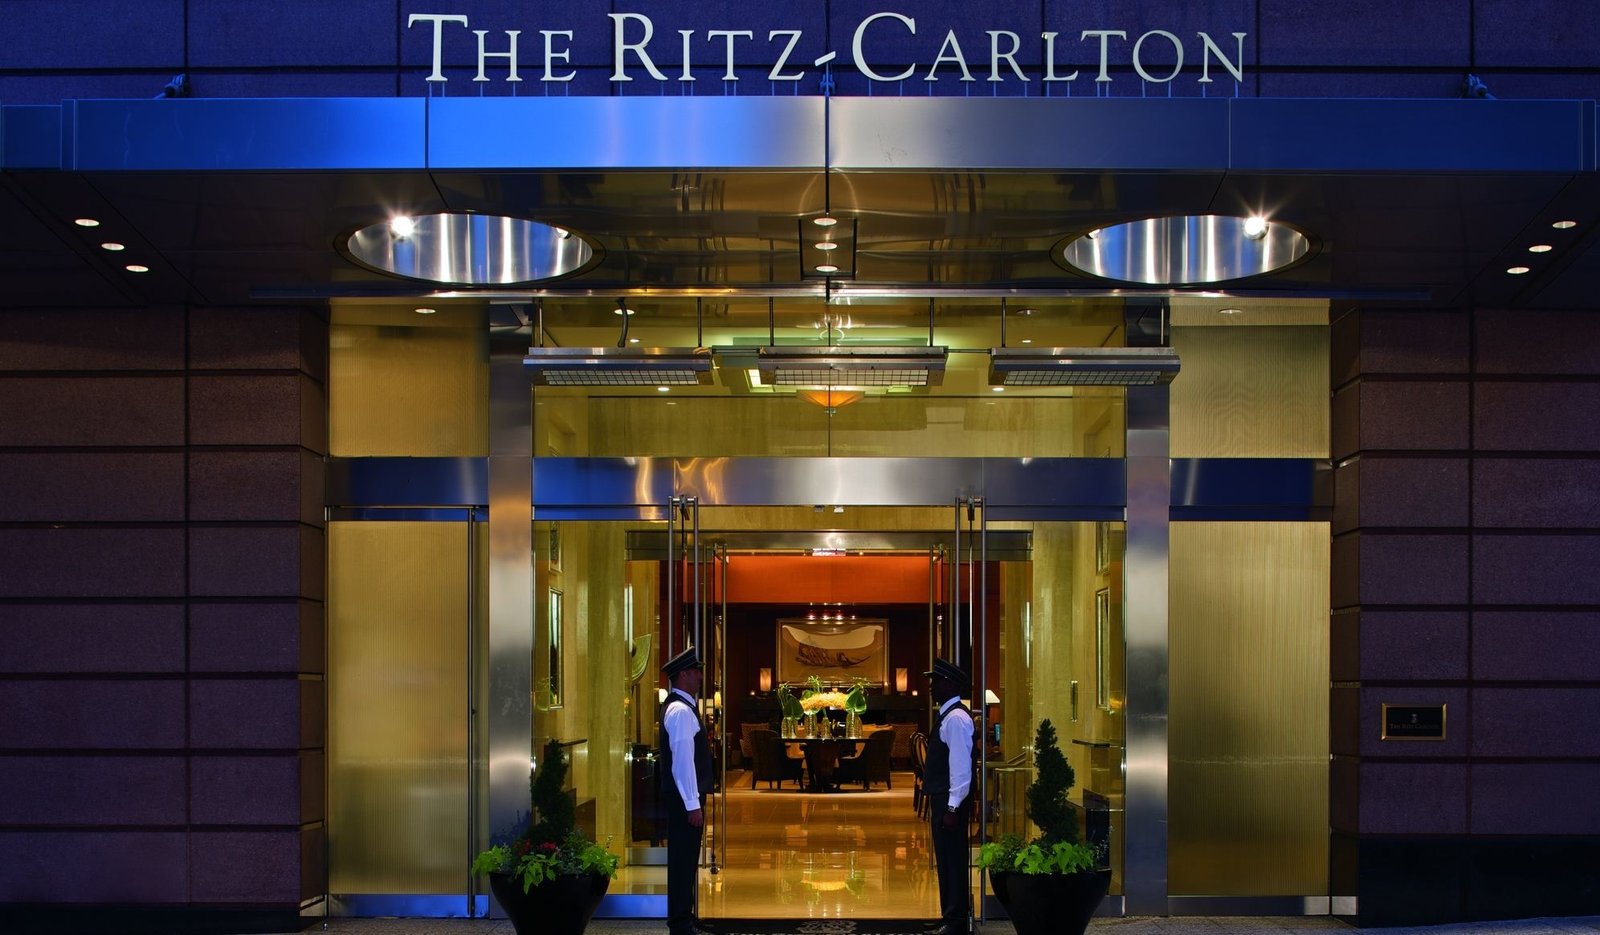 SWOT analysis of Ritz Carlton